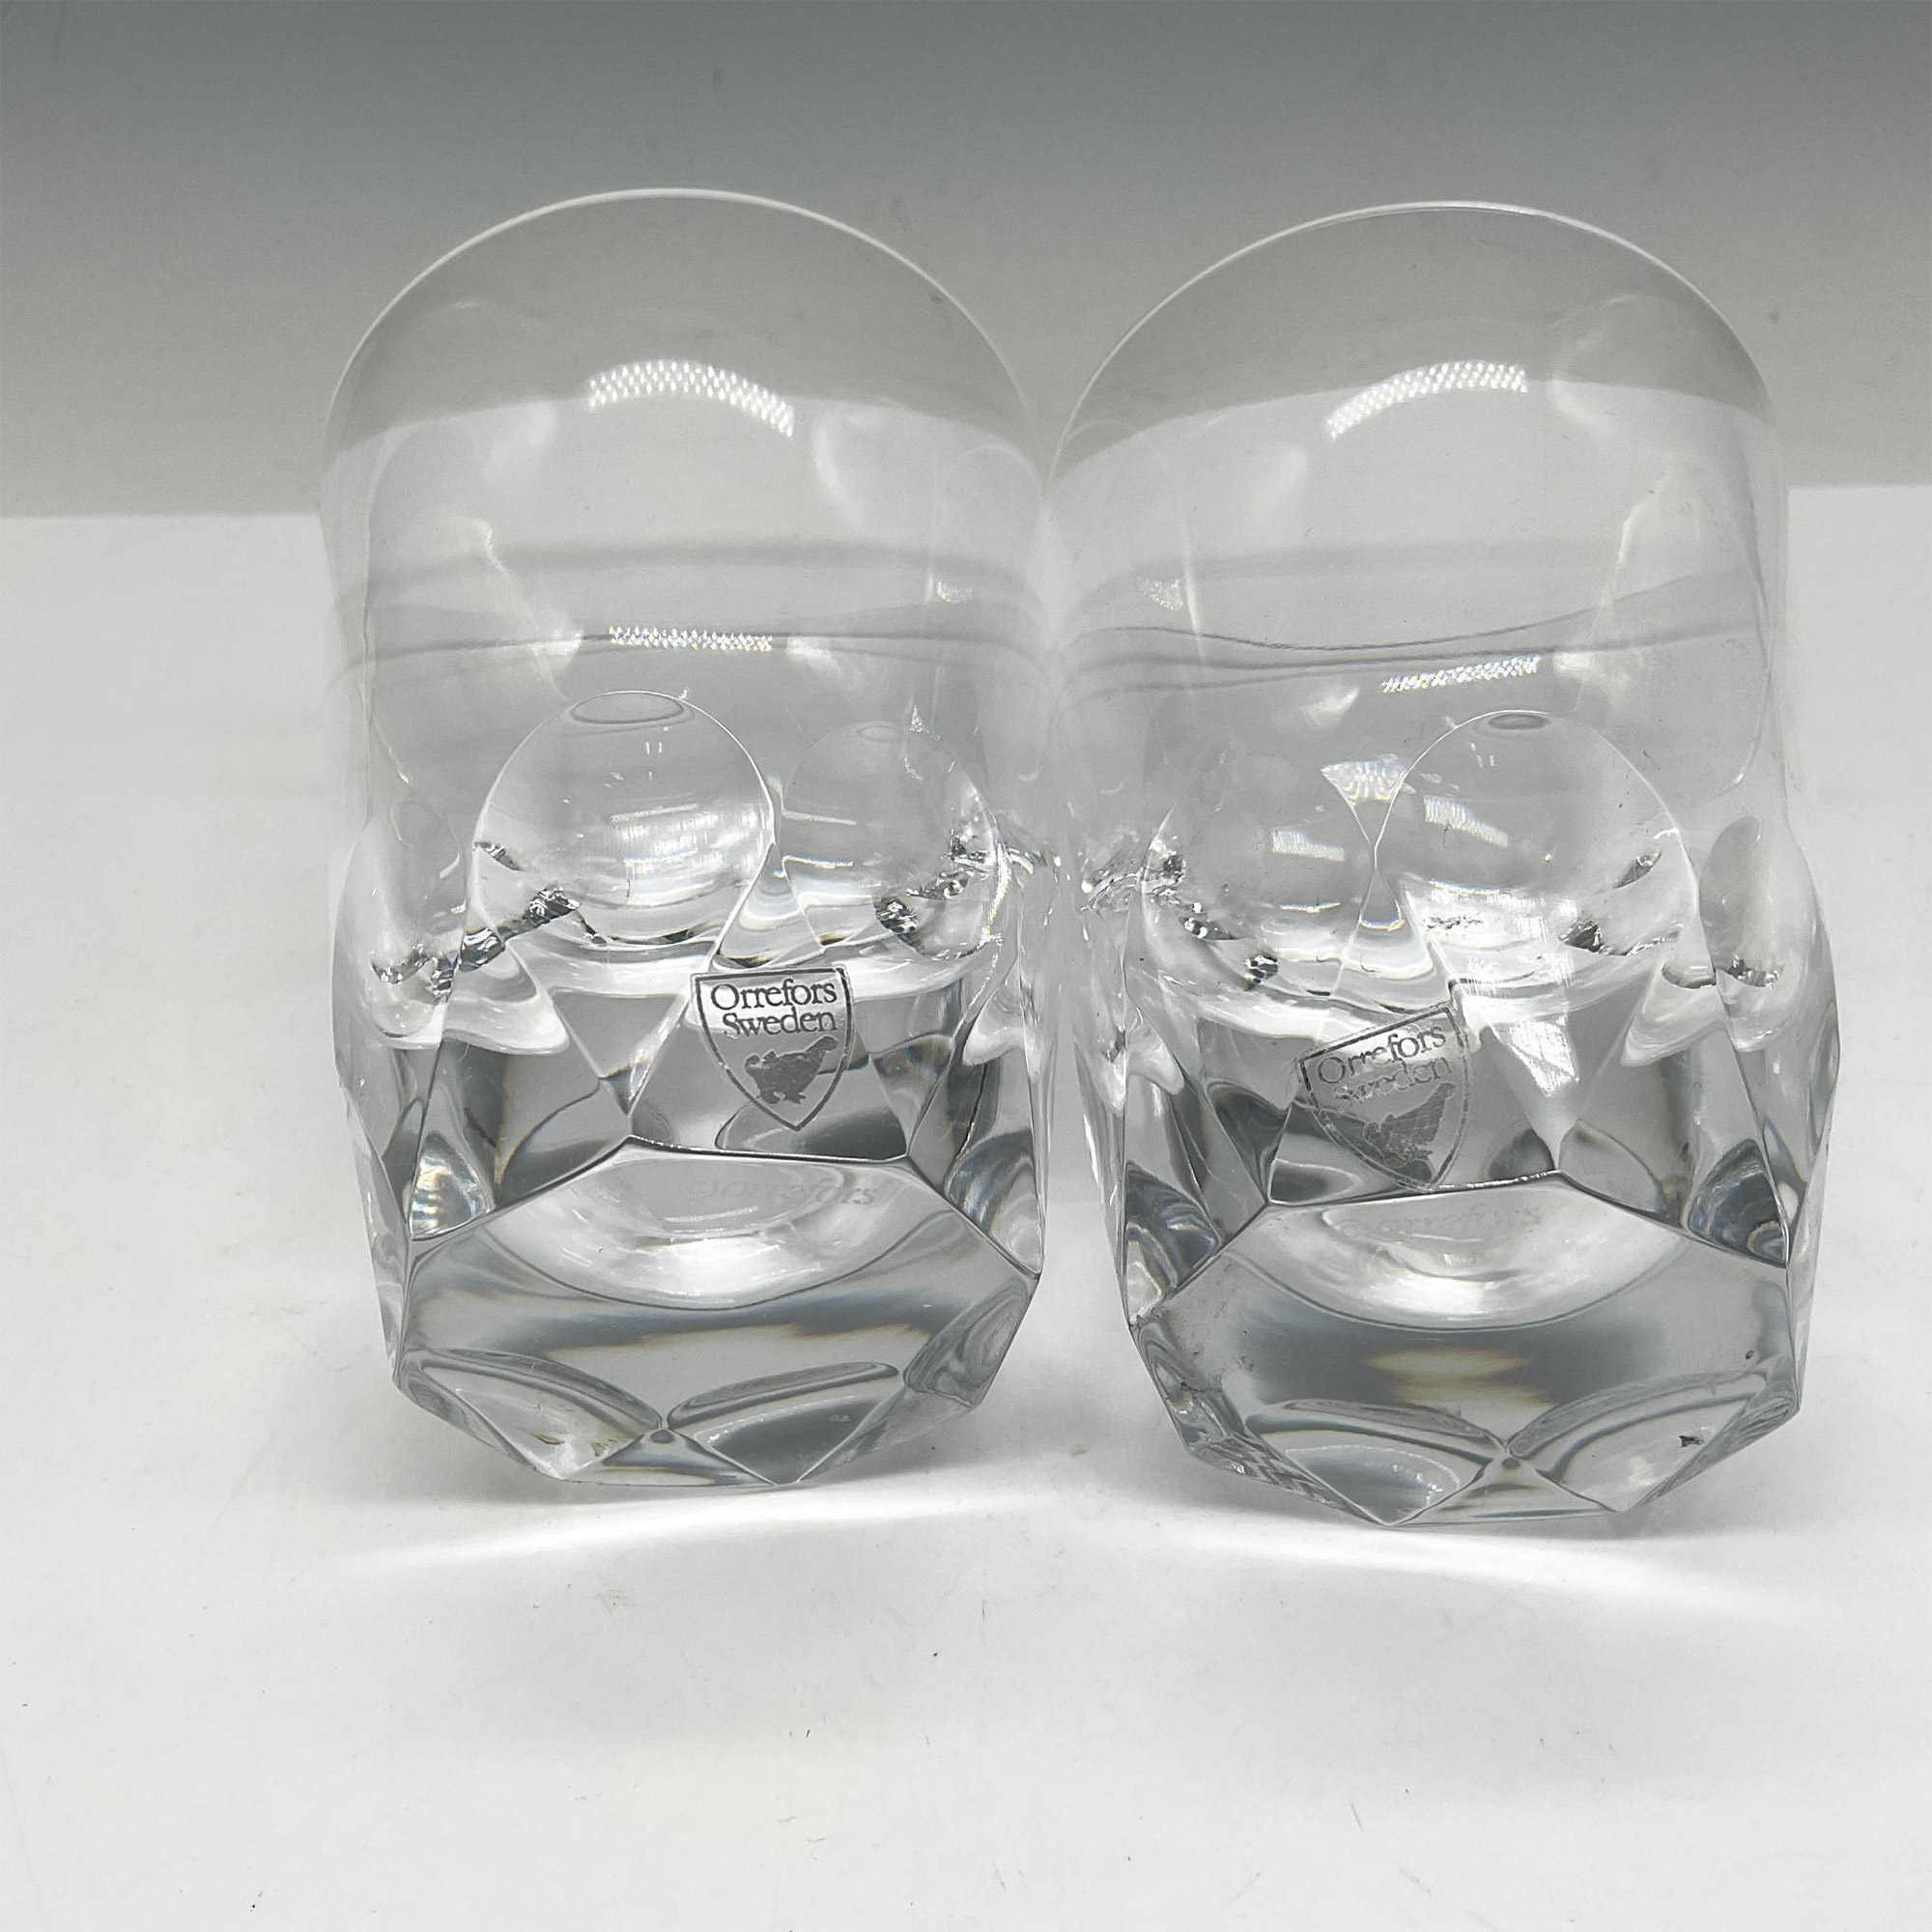 Orrefors Crystal Drink Glasses, Set of 2 - Image 3 of 4